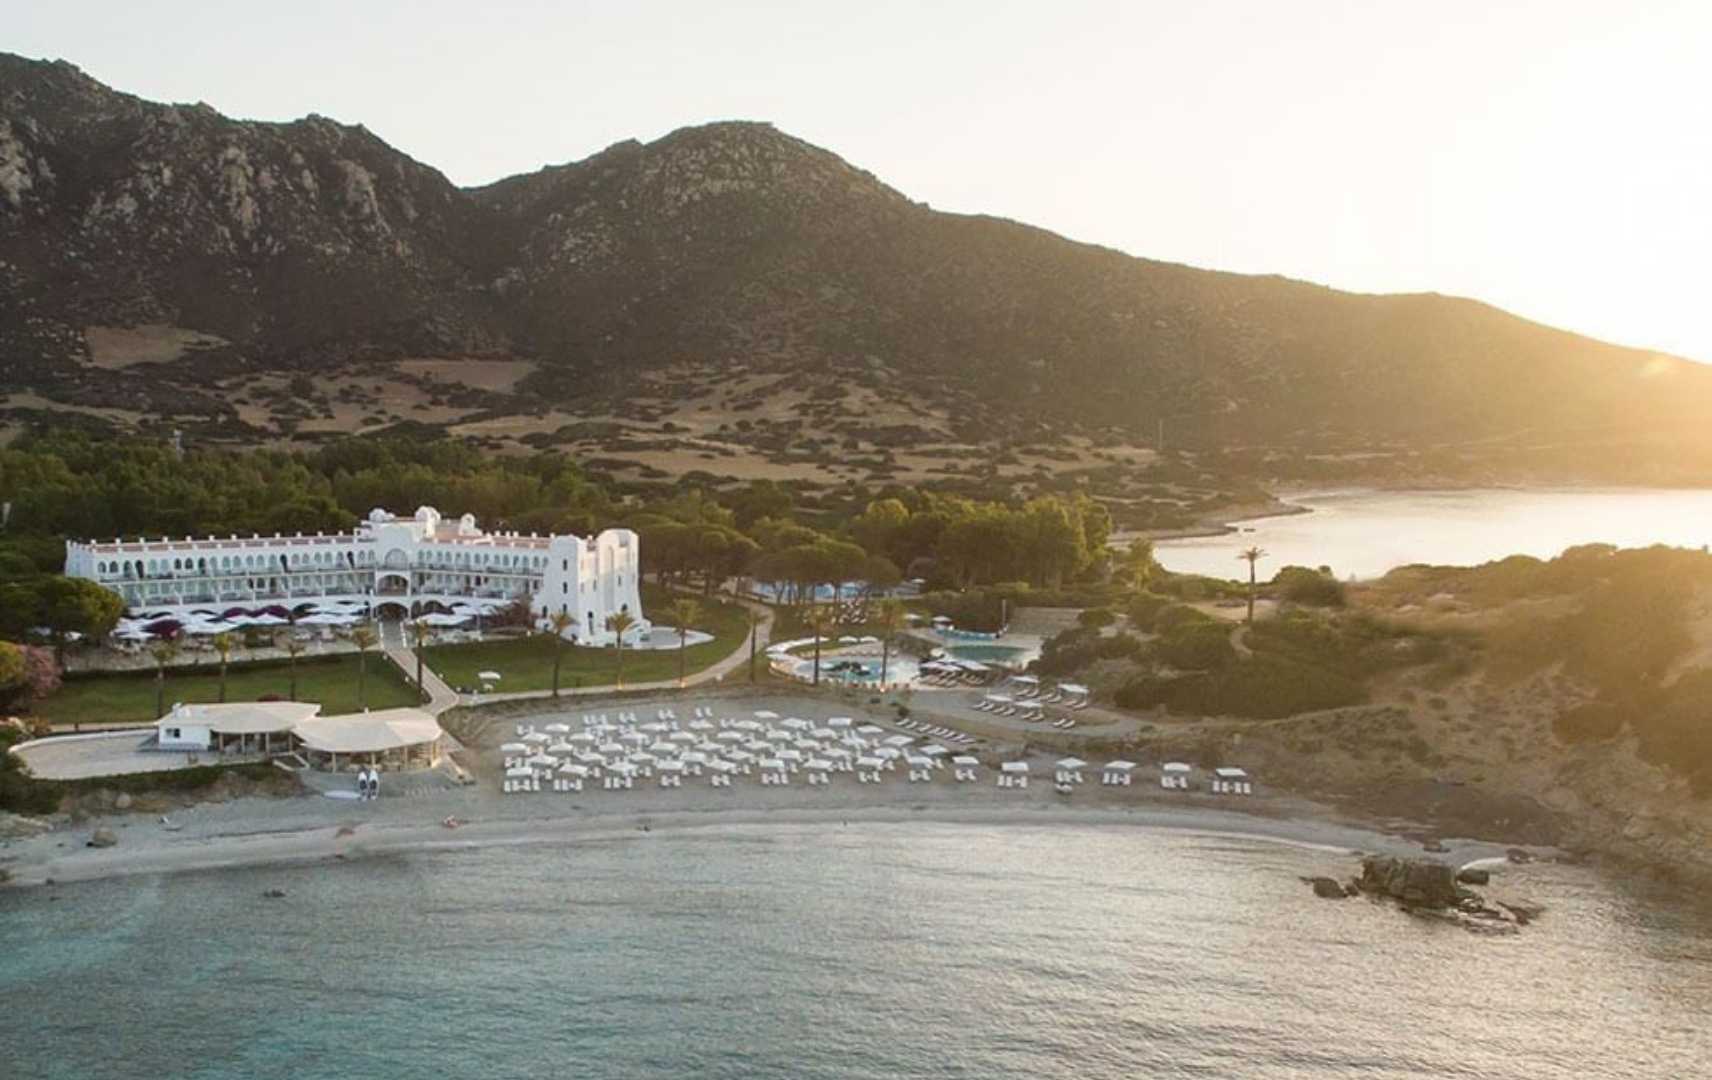 Blick auf das Falkensteiner Resort Capo Boi auf Sardinien